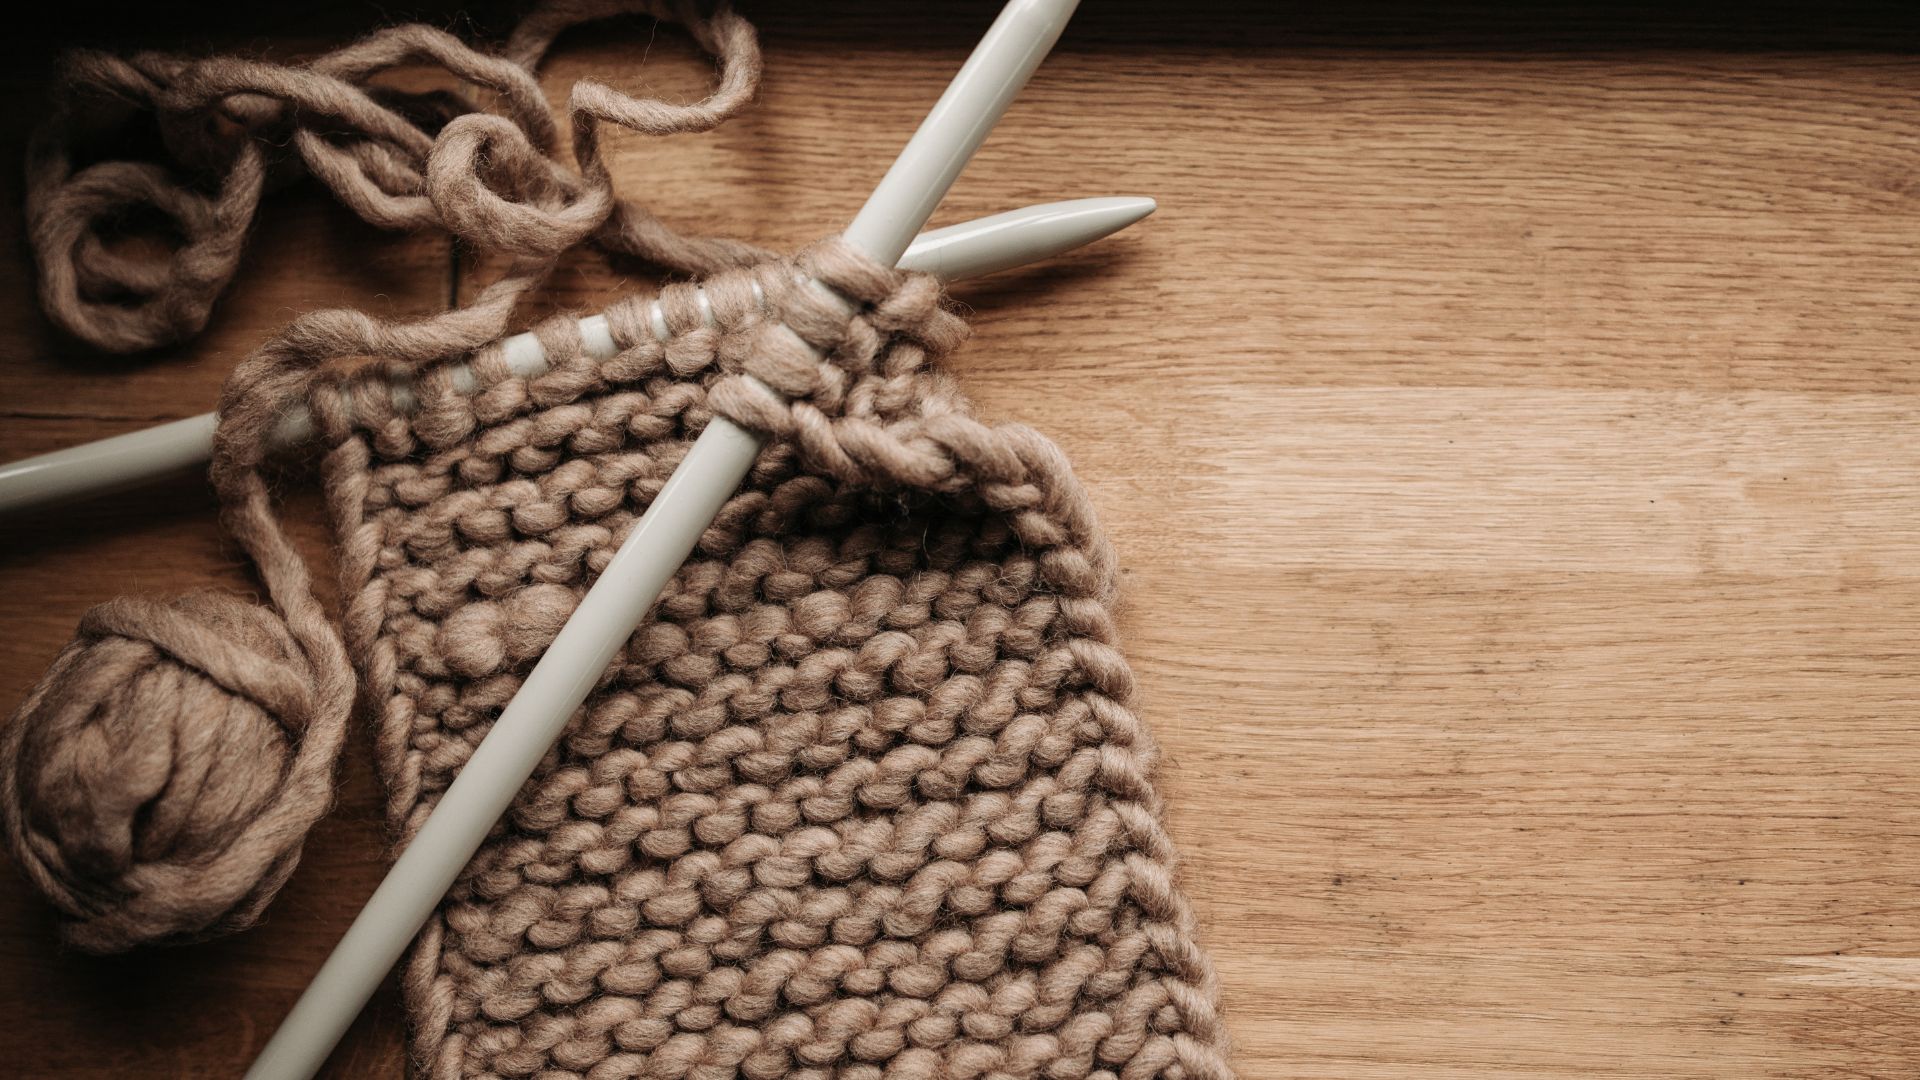 block crochet projects